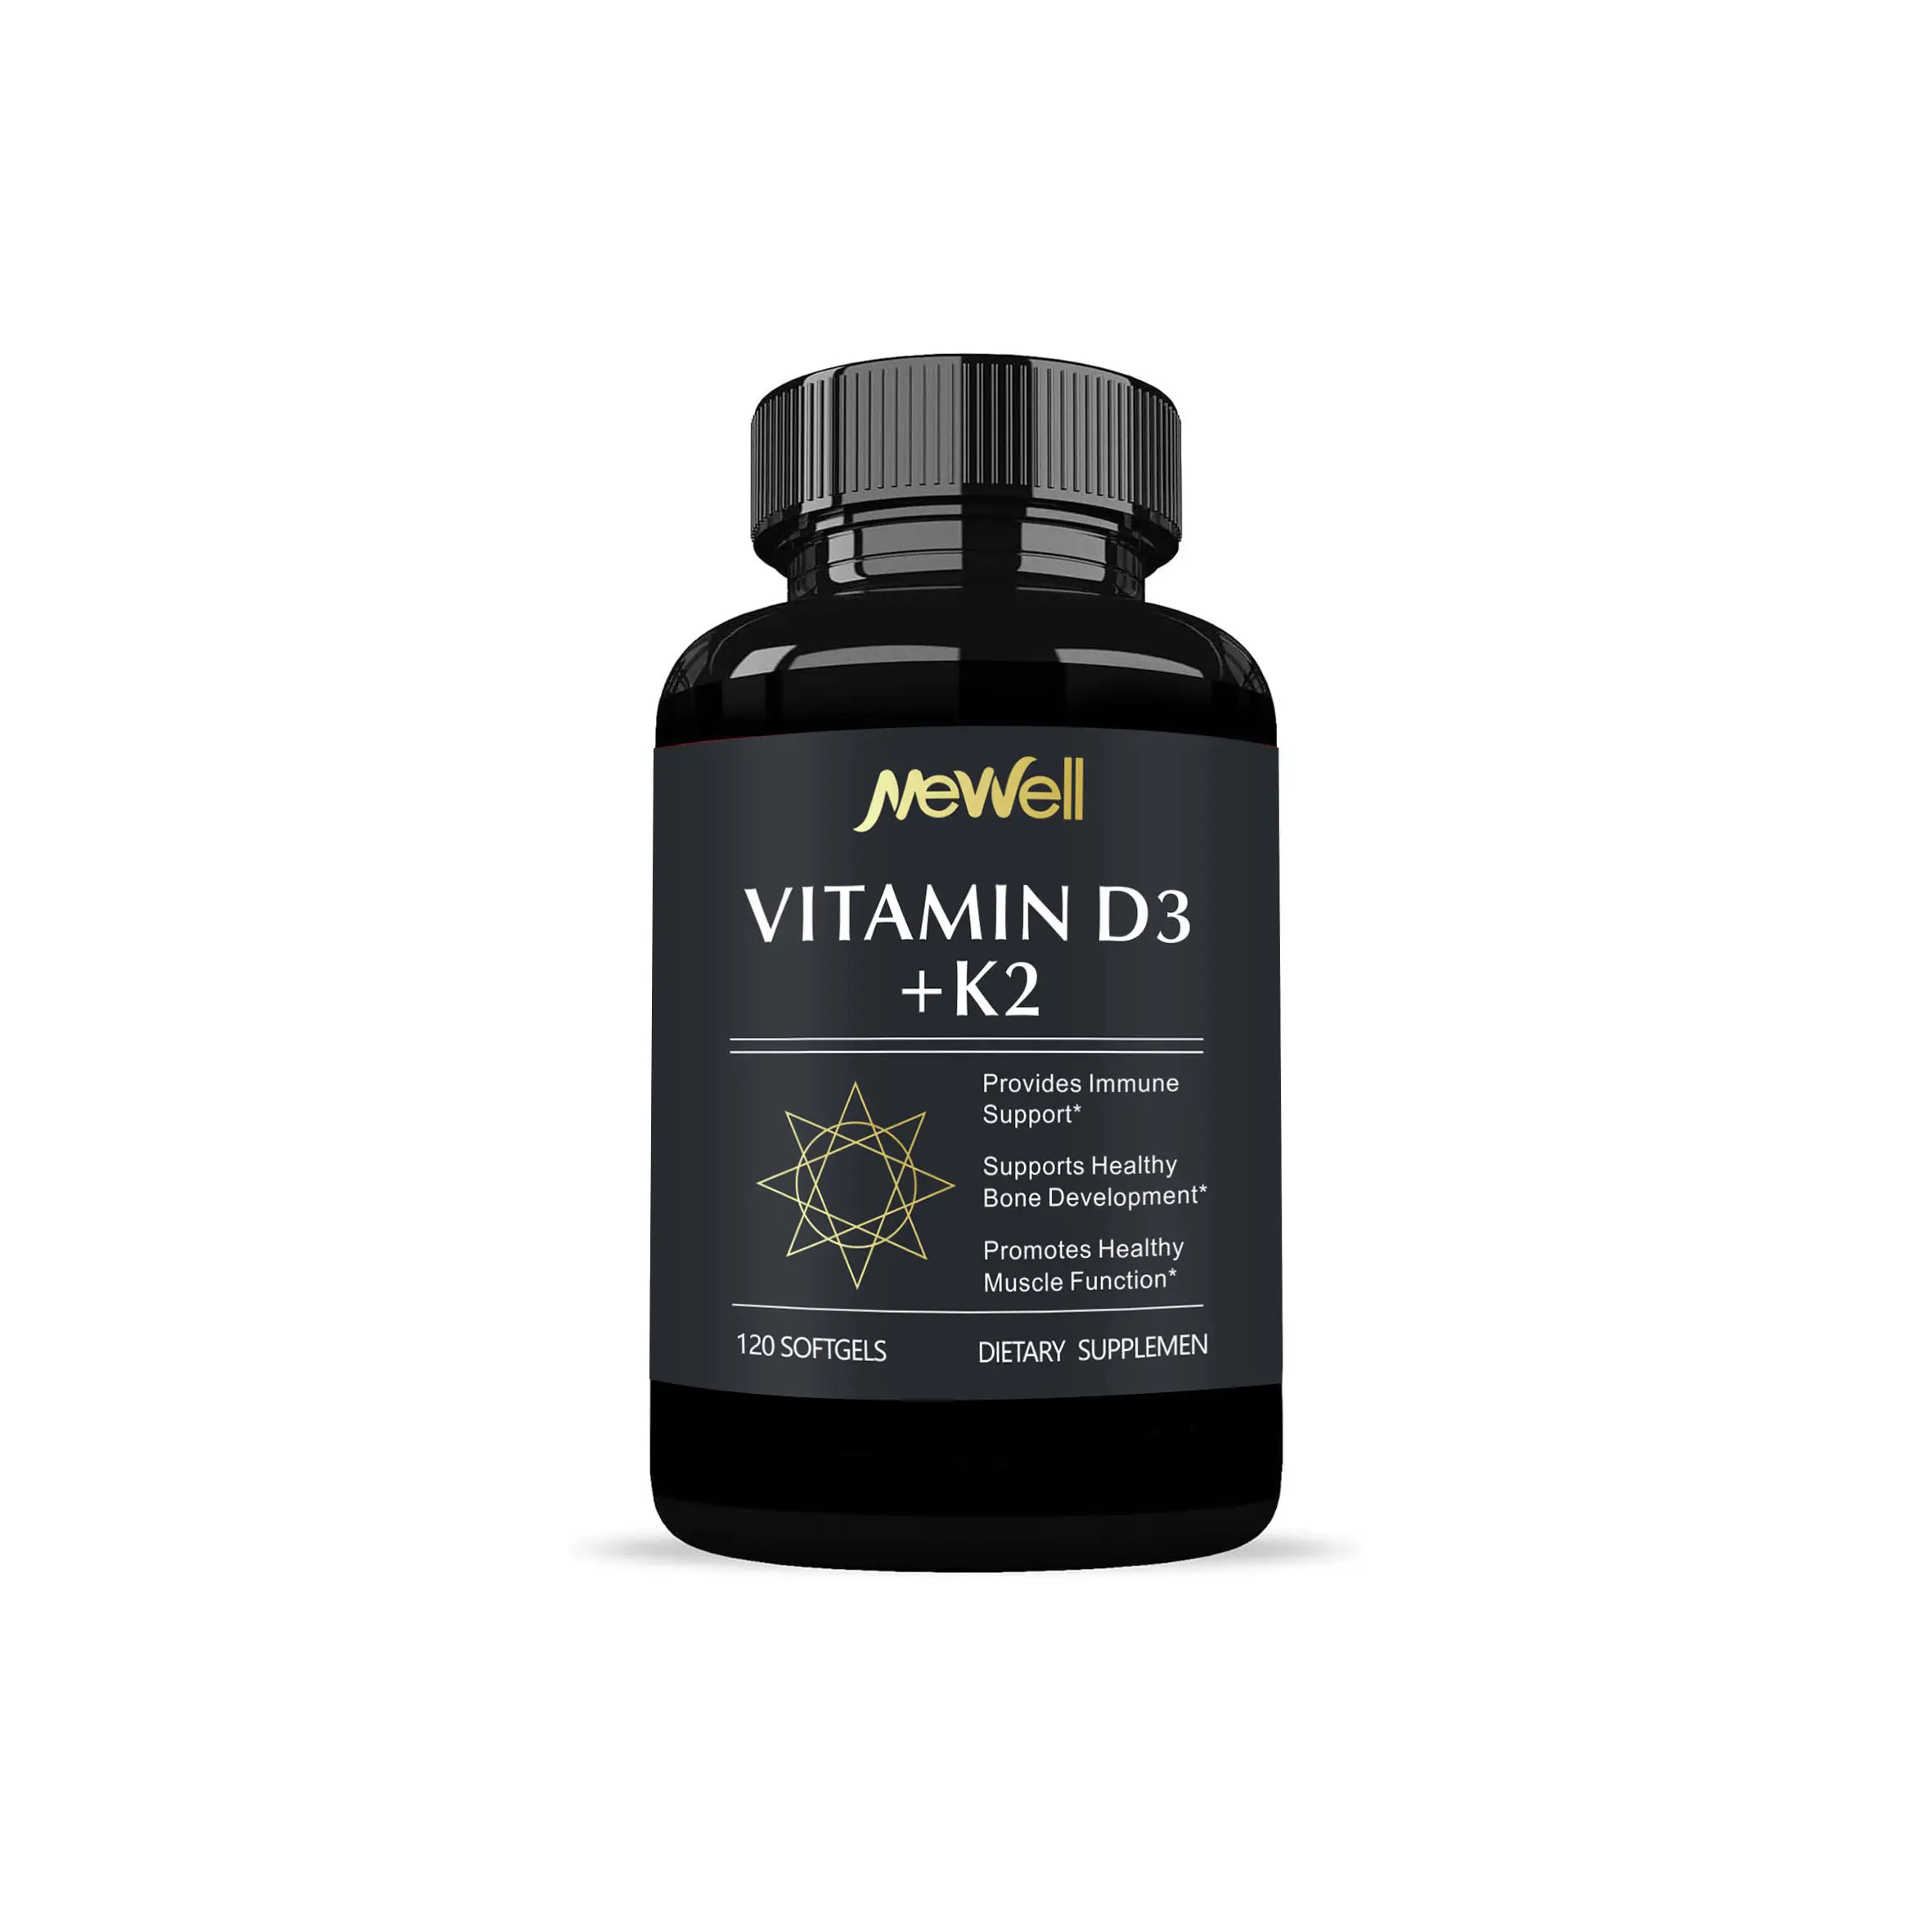 Vitamin Hữu Cơ D3 + K2 làm tăng mật độ xương và cung cấp các chất dinh dưỡng cần thiết cho cơ thể con người